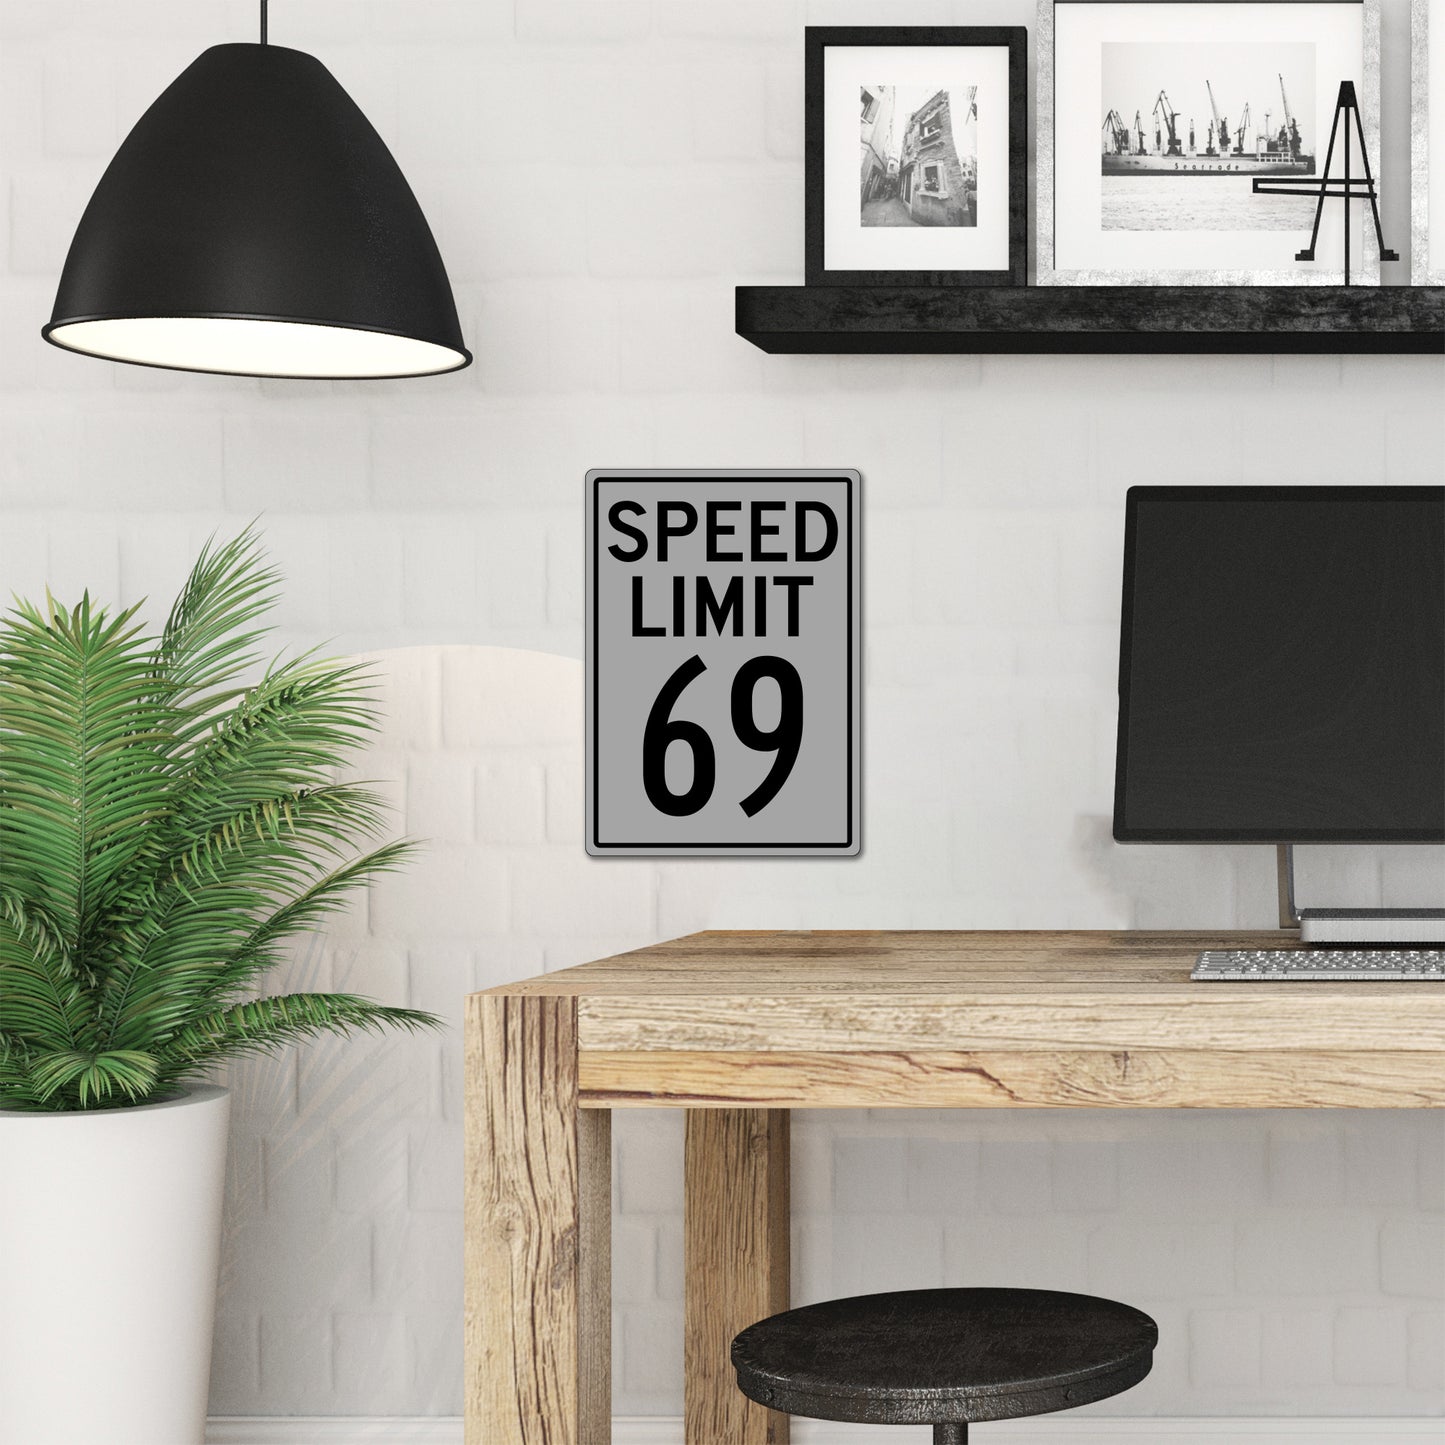 Speed Limit 69